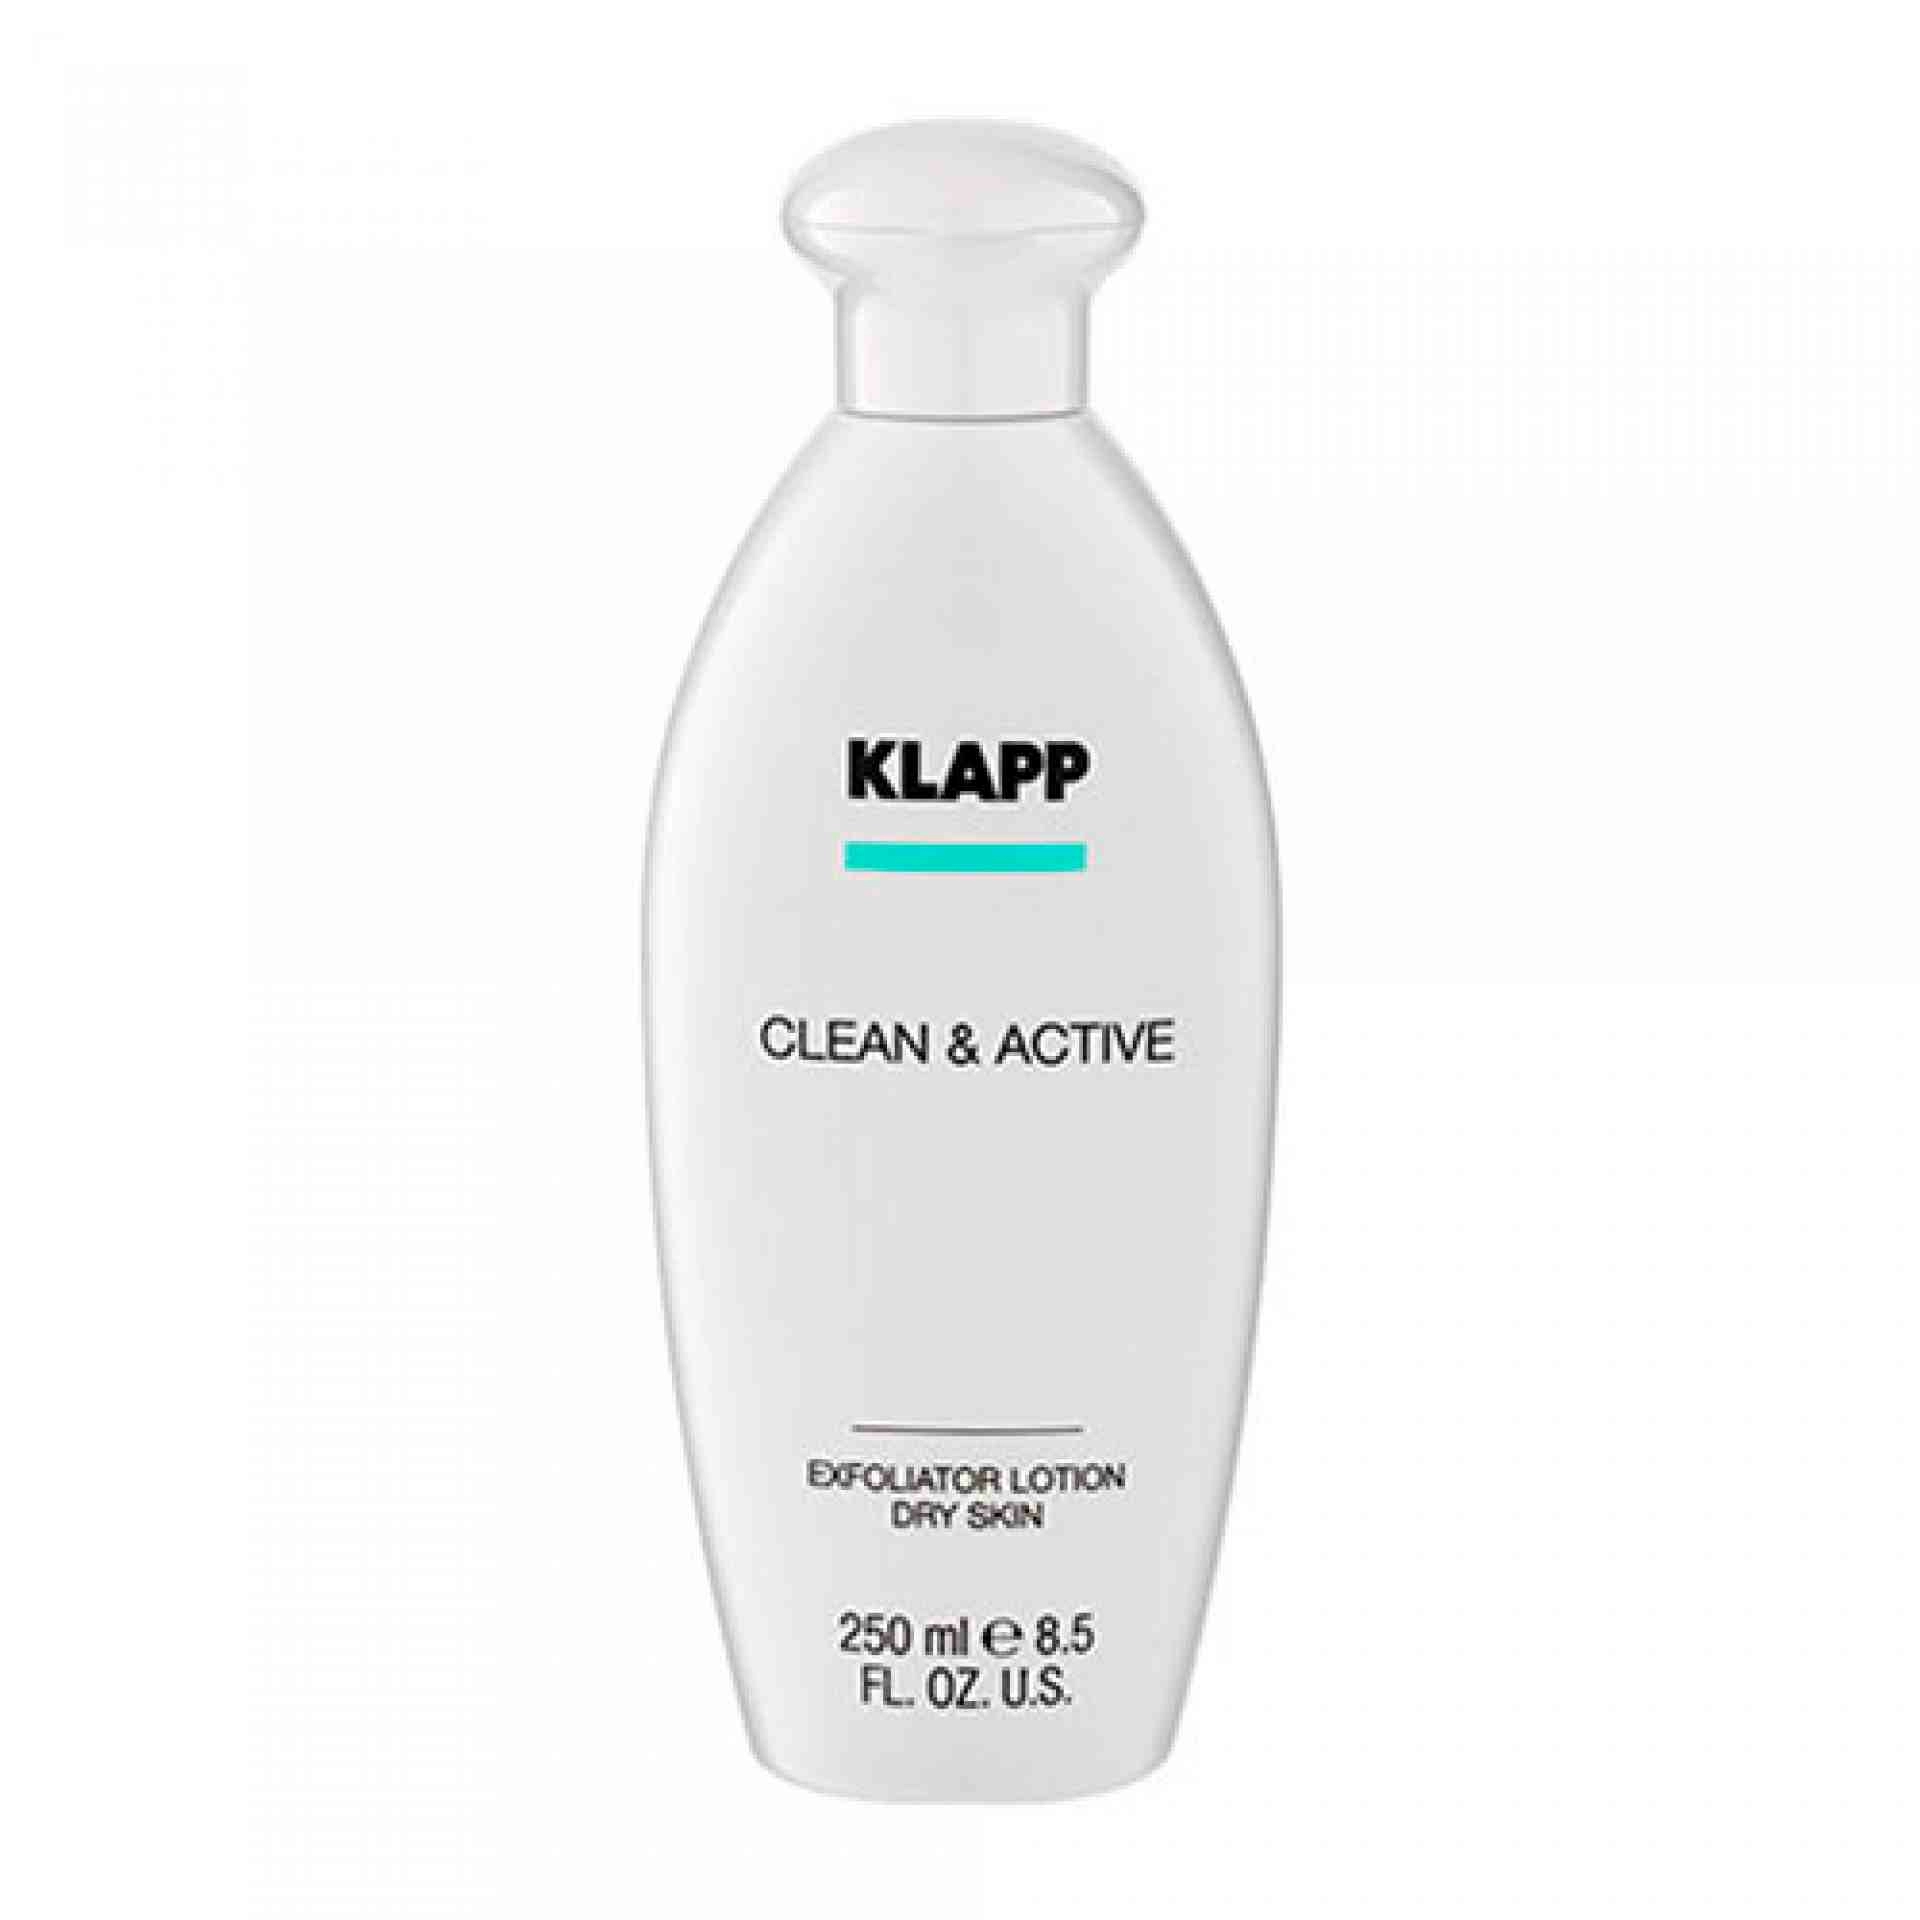 Exfoliator Lotion Dry Skin | Tónico Facial Refrescante 250ml - Clean & Active - Klapp ®